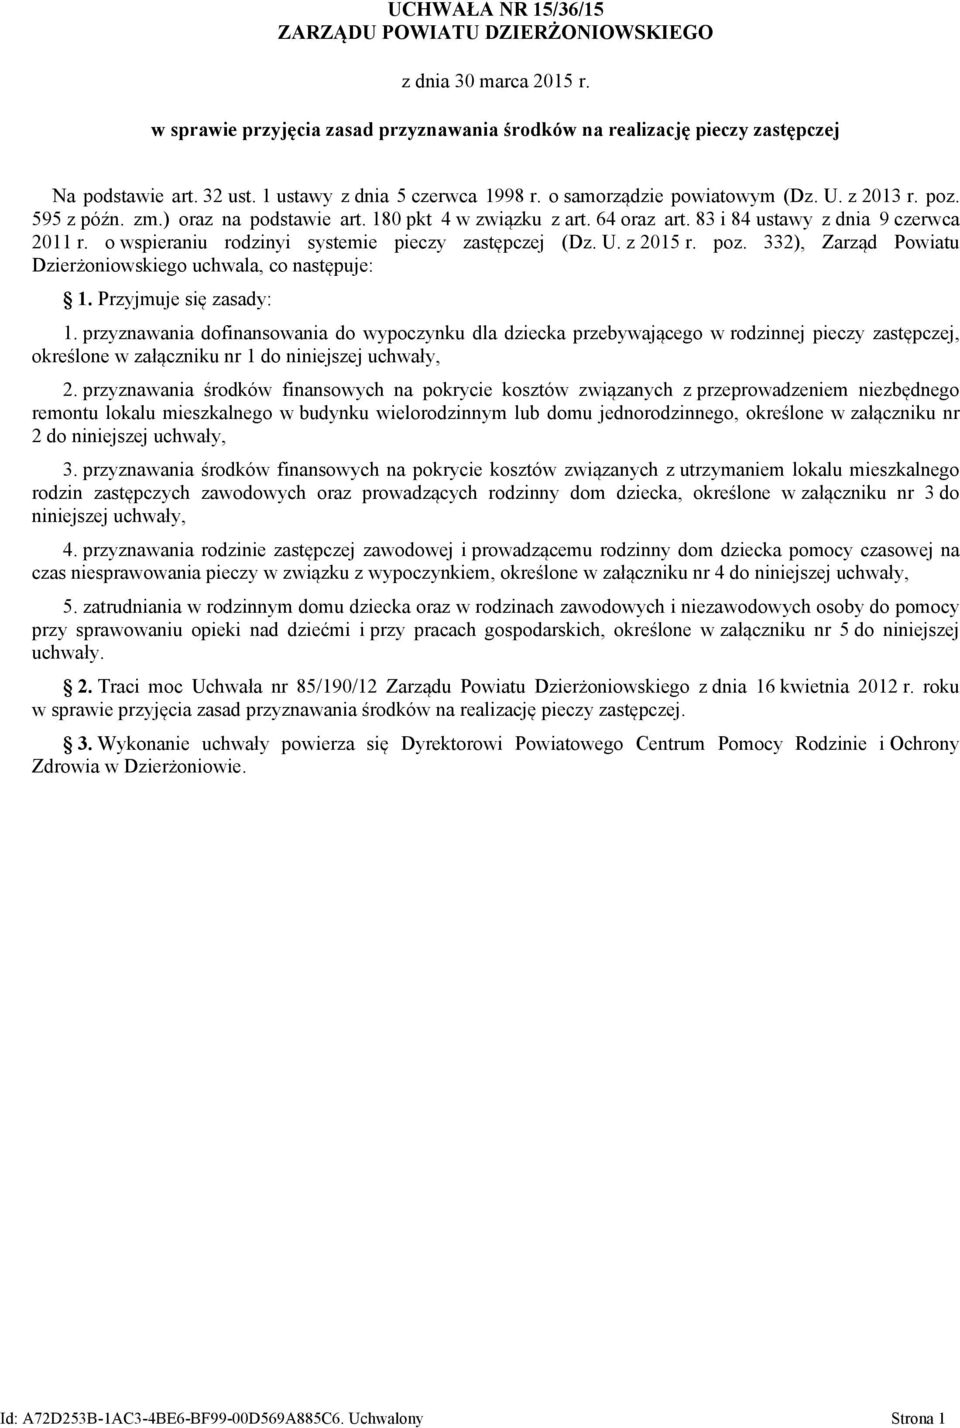 83 i 84 ustawy z dnia 9 czerwca 2011 r. o wspieraniu rodzinyi systemie pieczy zastępczej (Dz. U. z 2015 r. poz. 332), Zarząd Powiatu Dzierżoniowskiego uchwala, co następuje: 1.